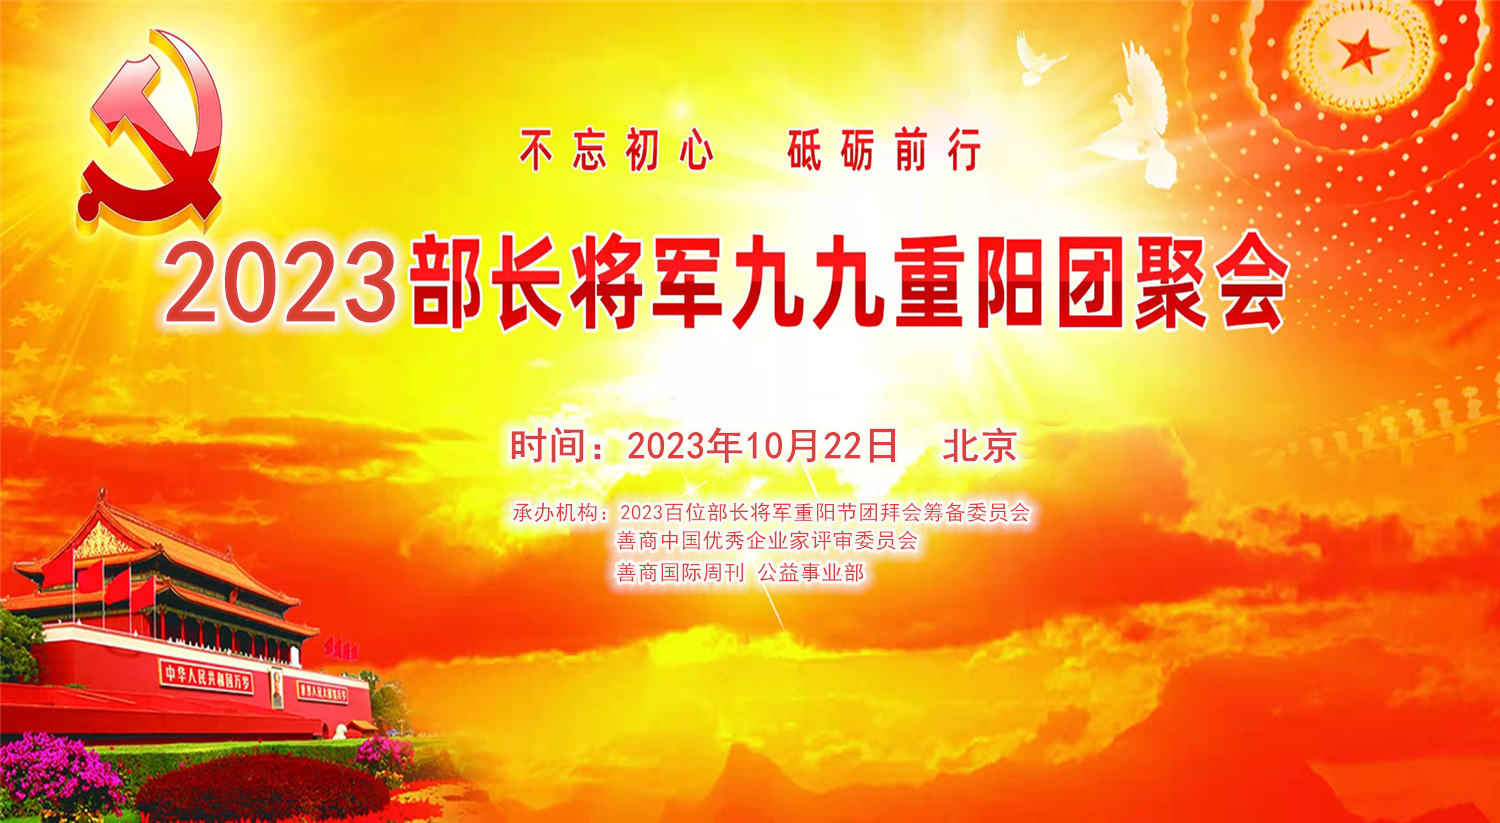 不忘初心跟党走“2023百位将军部长团拜会”10月22在京举行